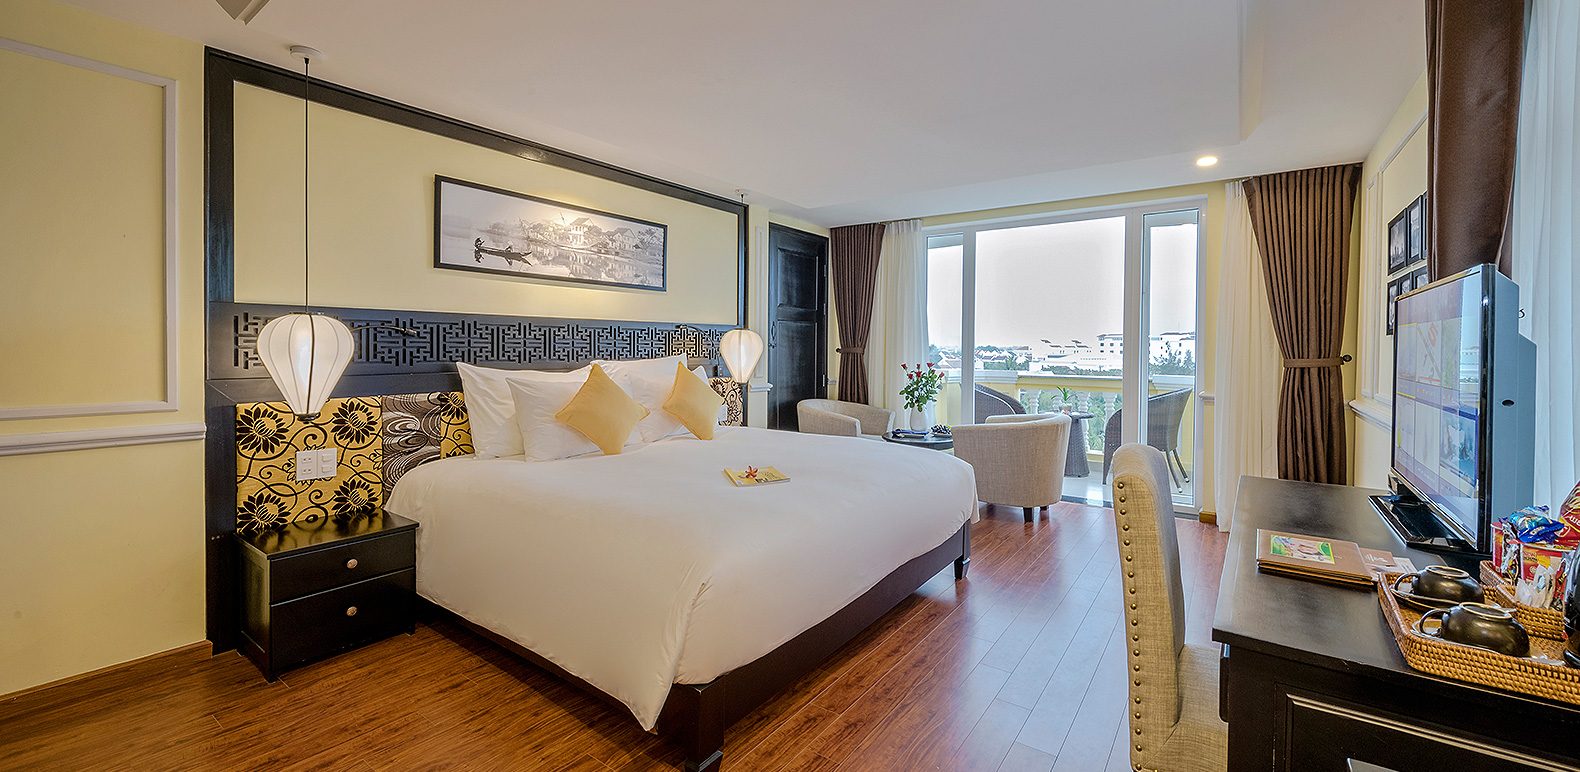 Le Pavillon Hoi An Luxury Resort & Spa Hoi An - Khách sạn 4 sao sở hữu tầm nhìn ra vườn dừa Bảy Mẫu 12